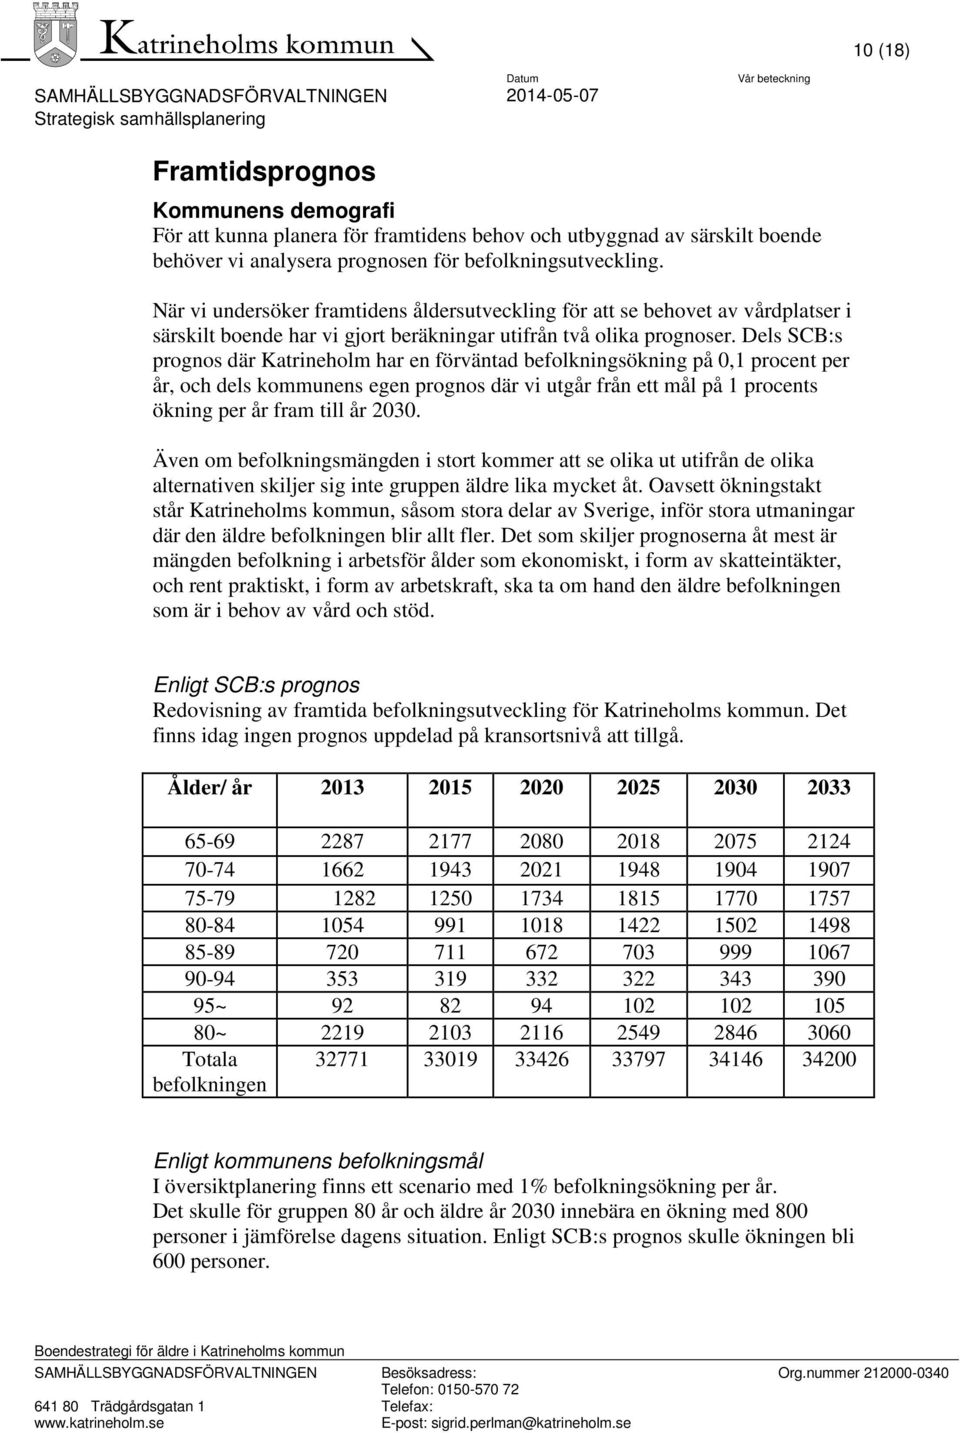 Dels SCB:s prognos där Katrineholm har en förväntad befolkningsökning på 0,1 procent per år, och dels kommunens egen prognos där vi utgår från ett mål på 1 procents ökning per år fram till år 2030.